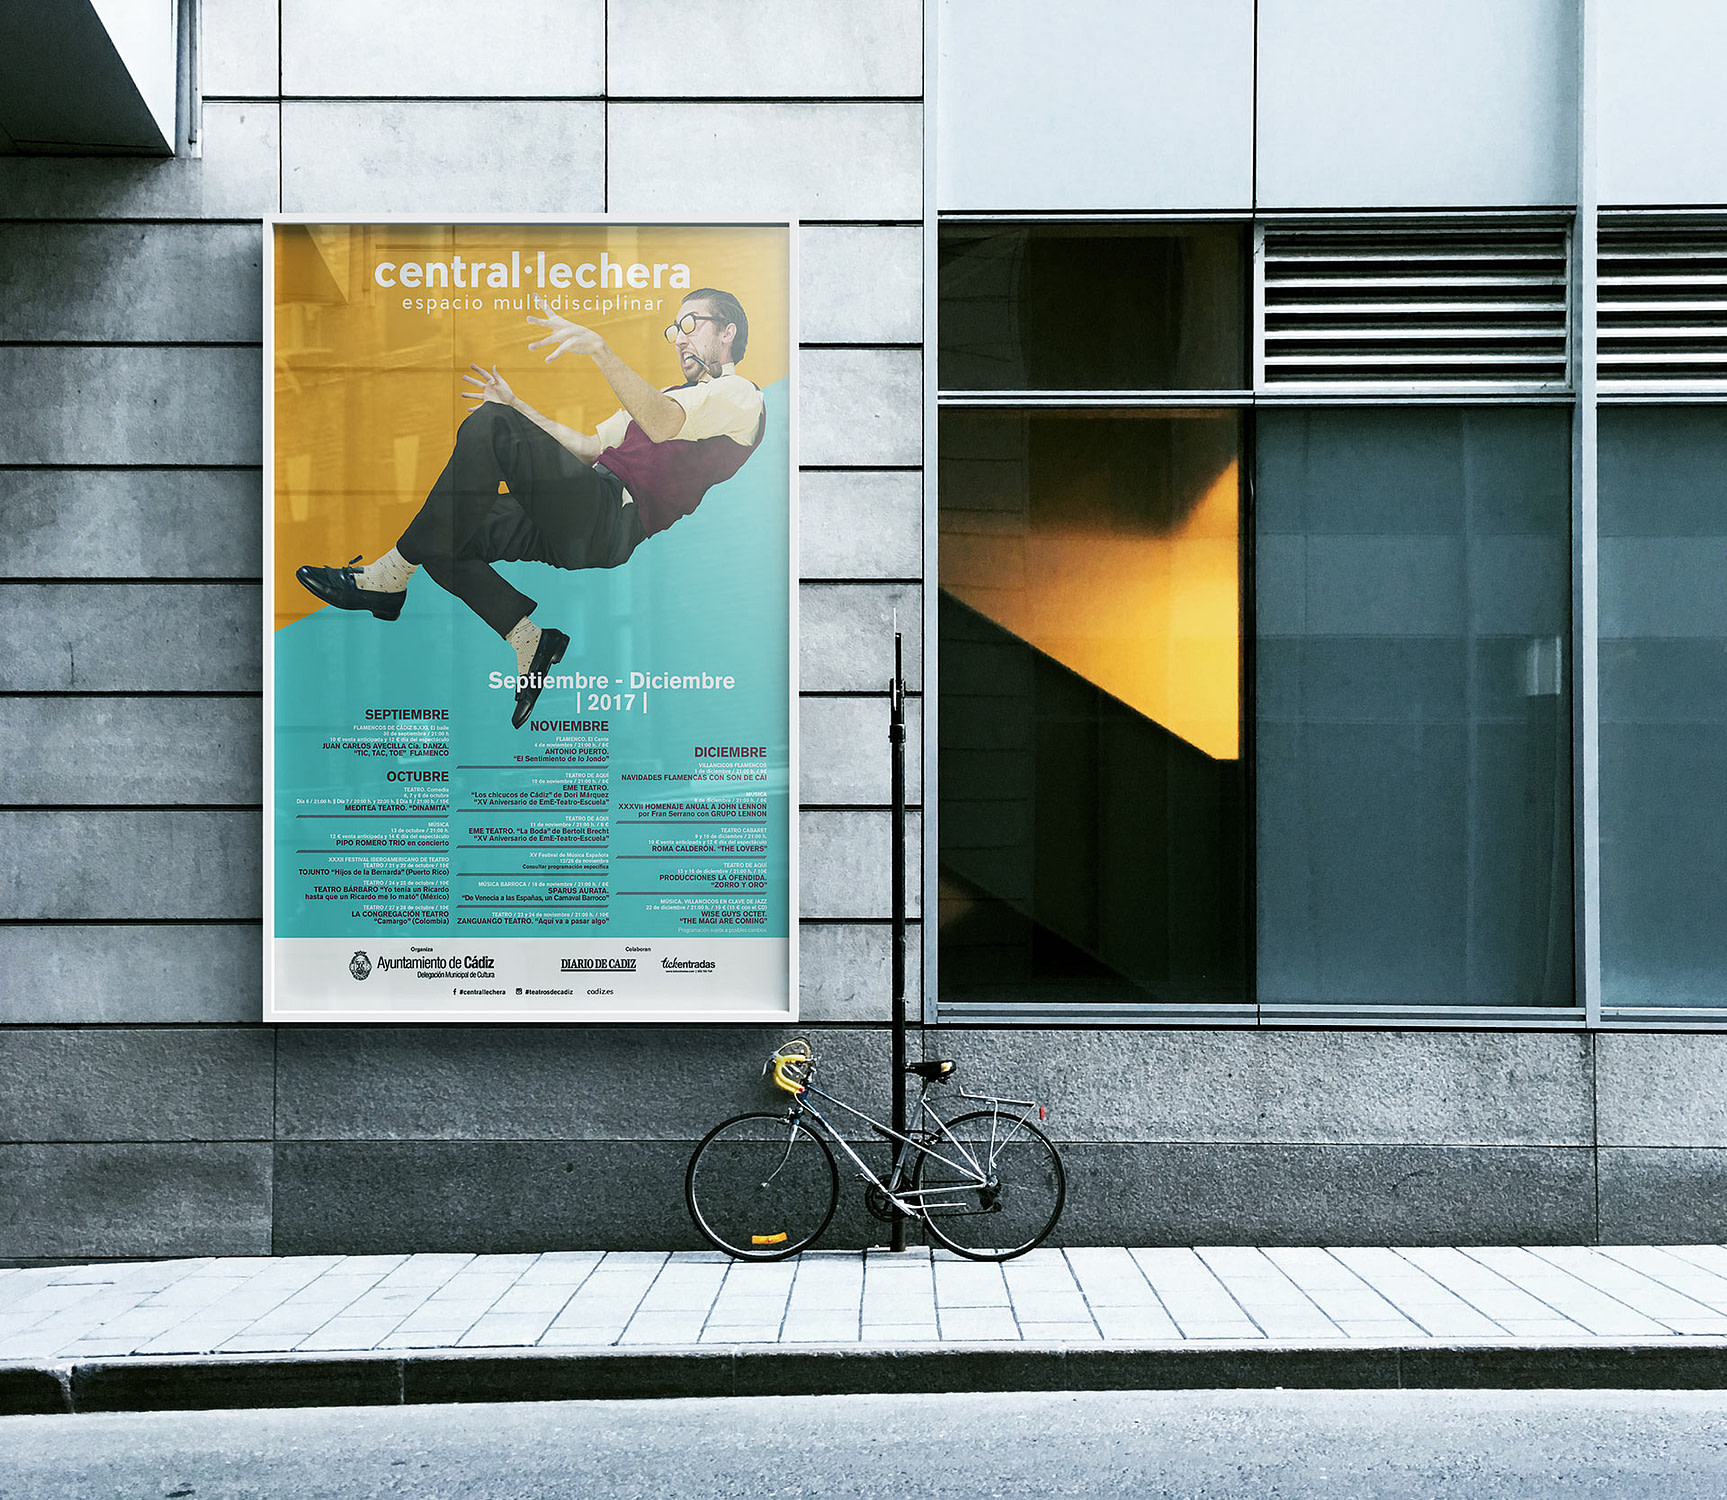 Cartel - Campaña de publicidad - Sala Central Lechera (Septiembre-Diciembre 2017)